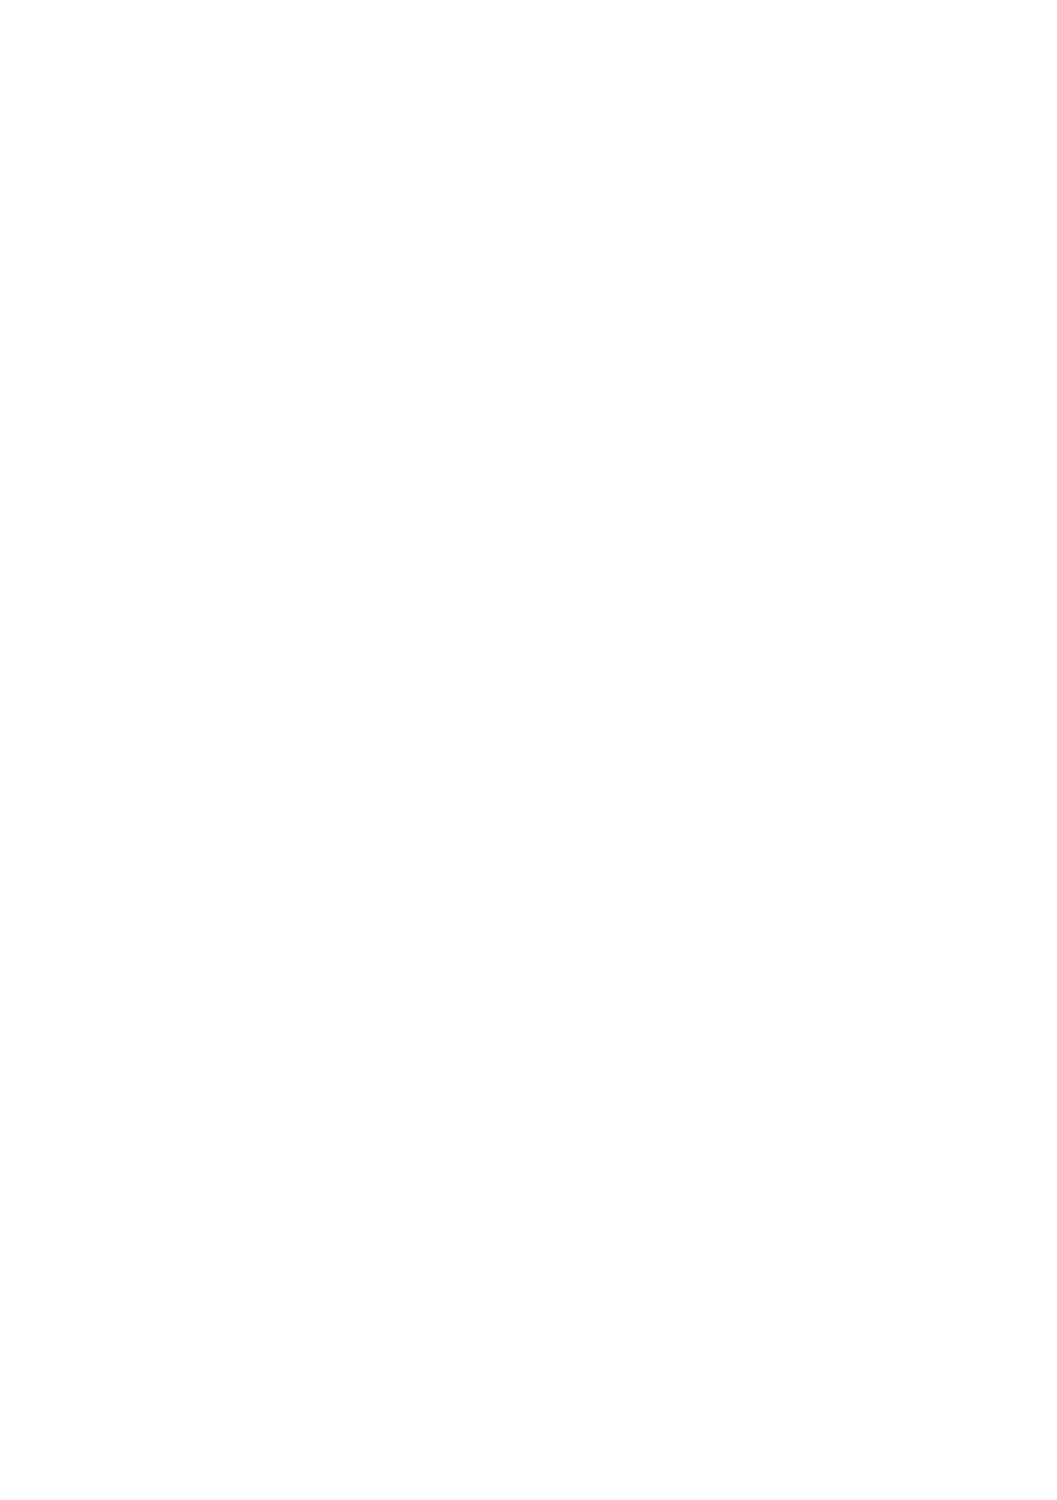 [アンソロジー] 二次元コミックマガジン 觸手ニ寄生サレシ乙女ノ躰 Vol.2 [中] 2/76 